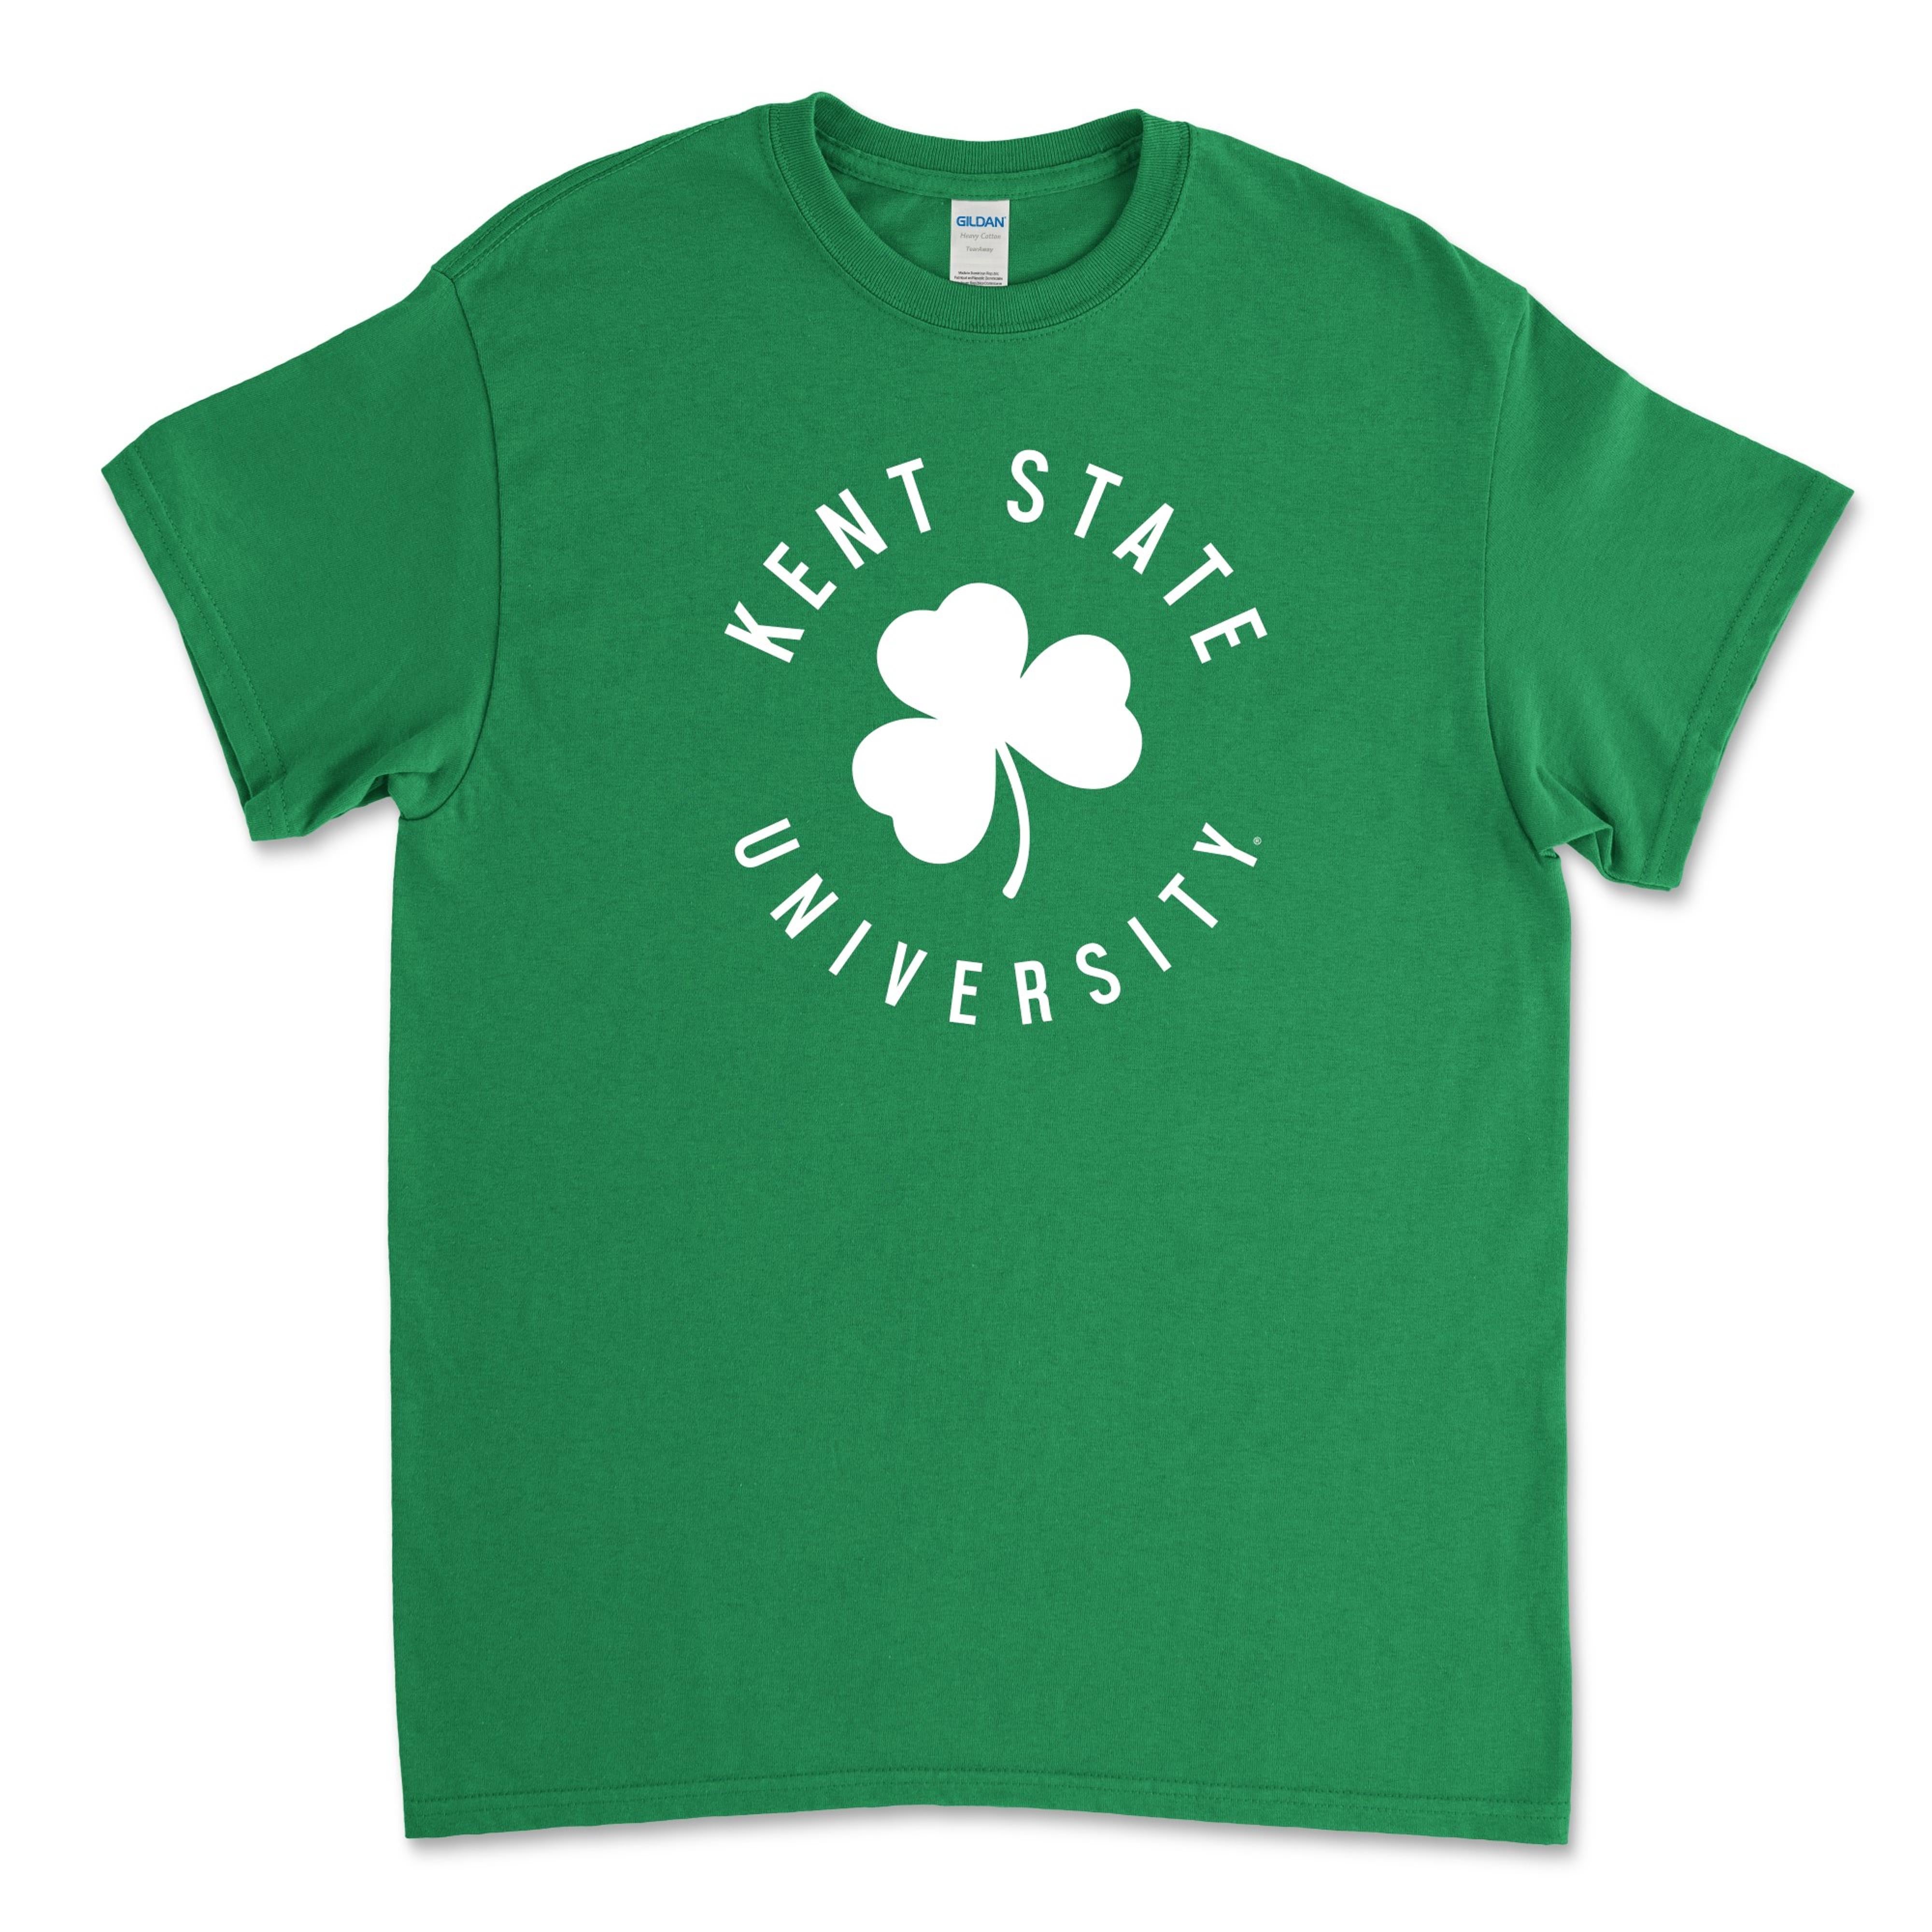 Kent State Green Clover T-Shirt